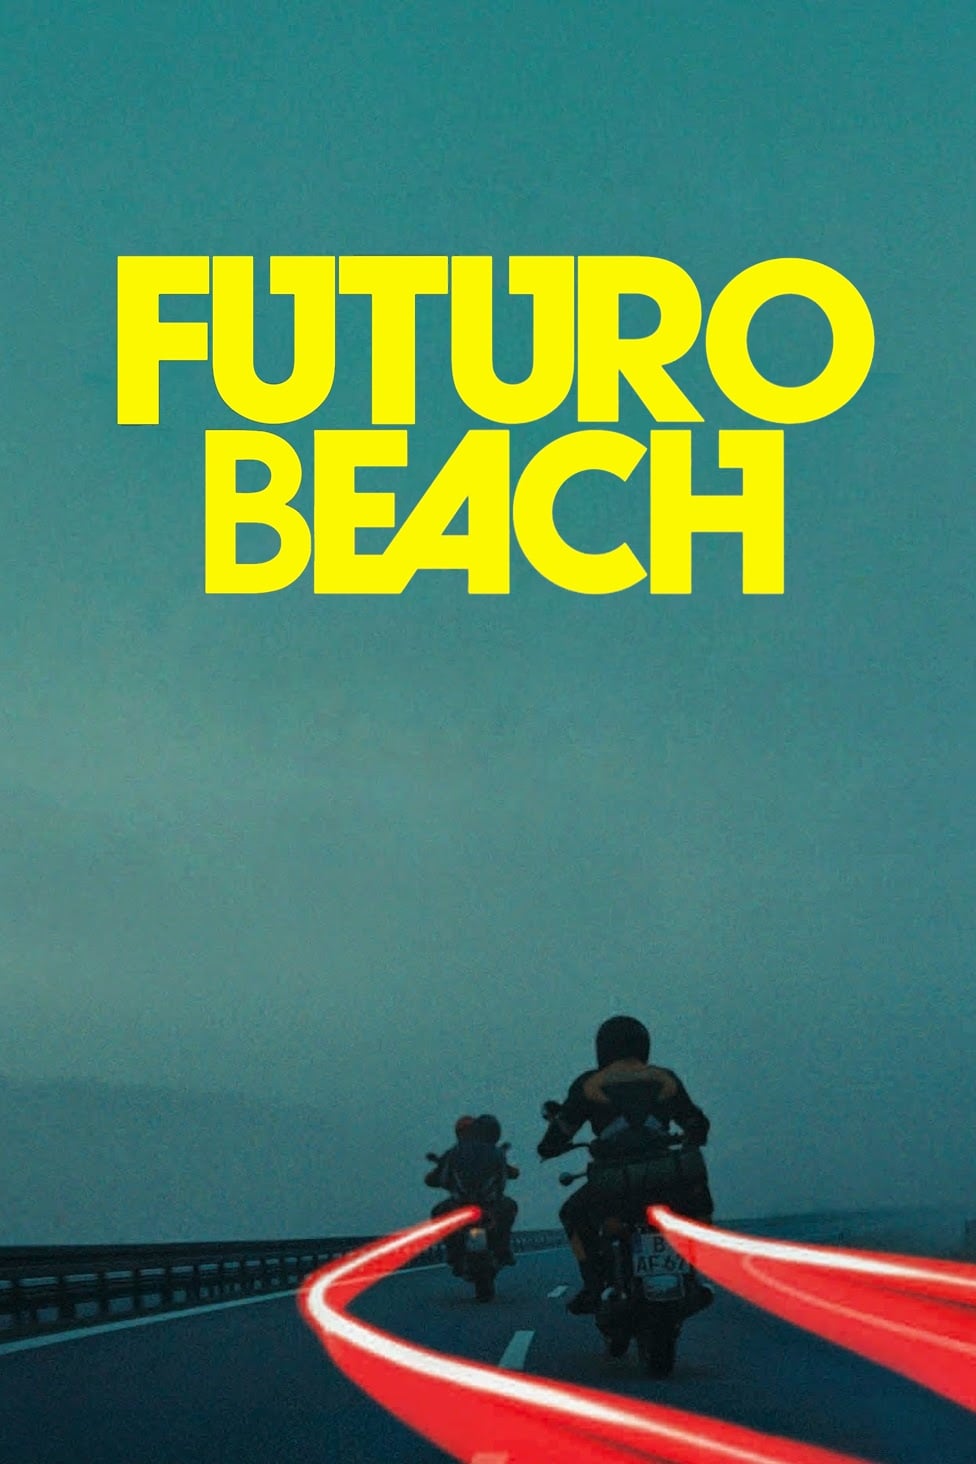 Futuro Beach est-il disponible sur Netflix ou autre ?